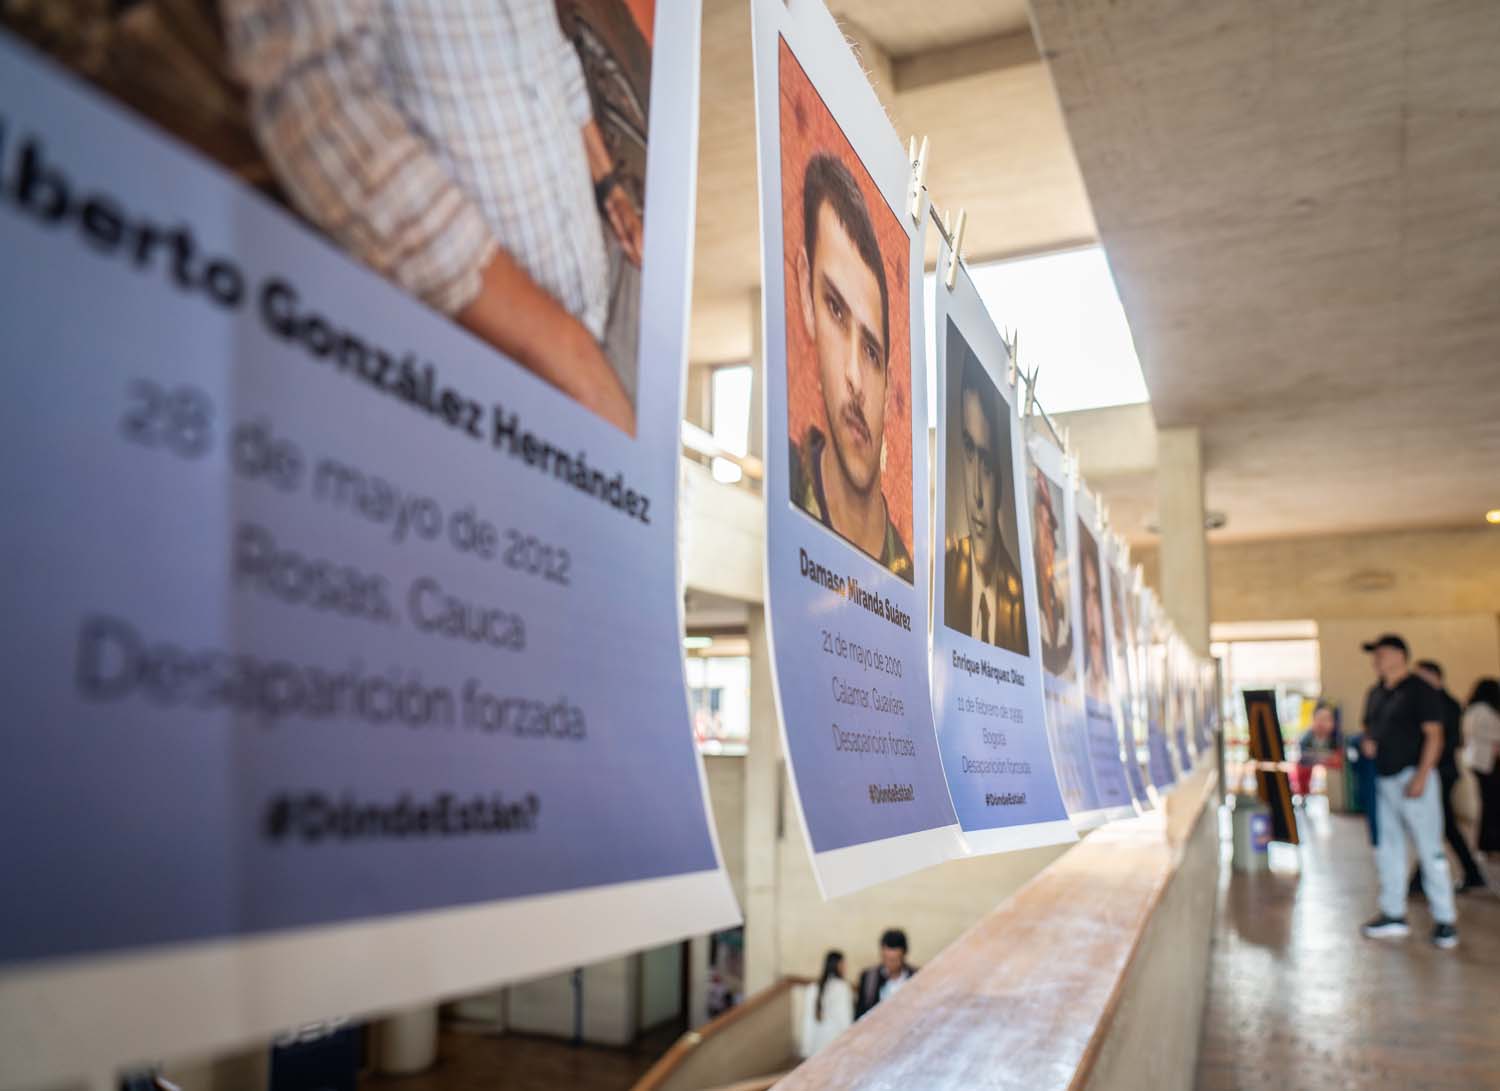 Fotografías de homenaje a las víctimas desaparecidas se organizan afuera de una biblioteca en Bogotá.